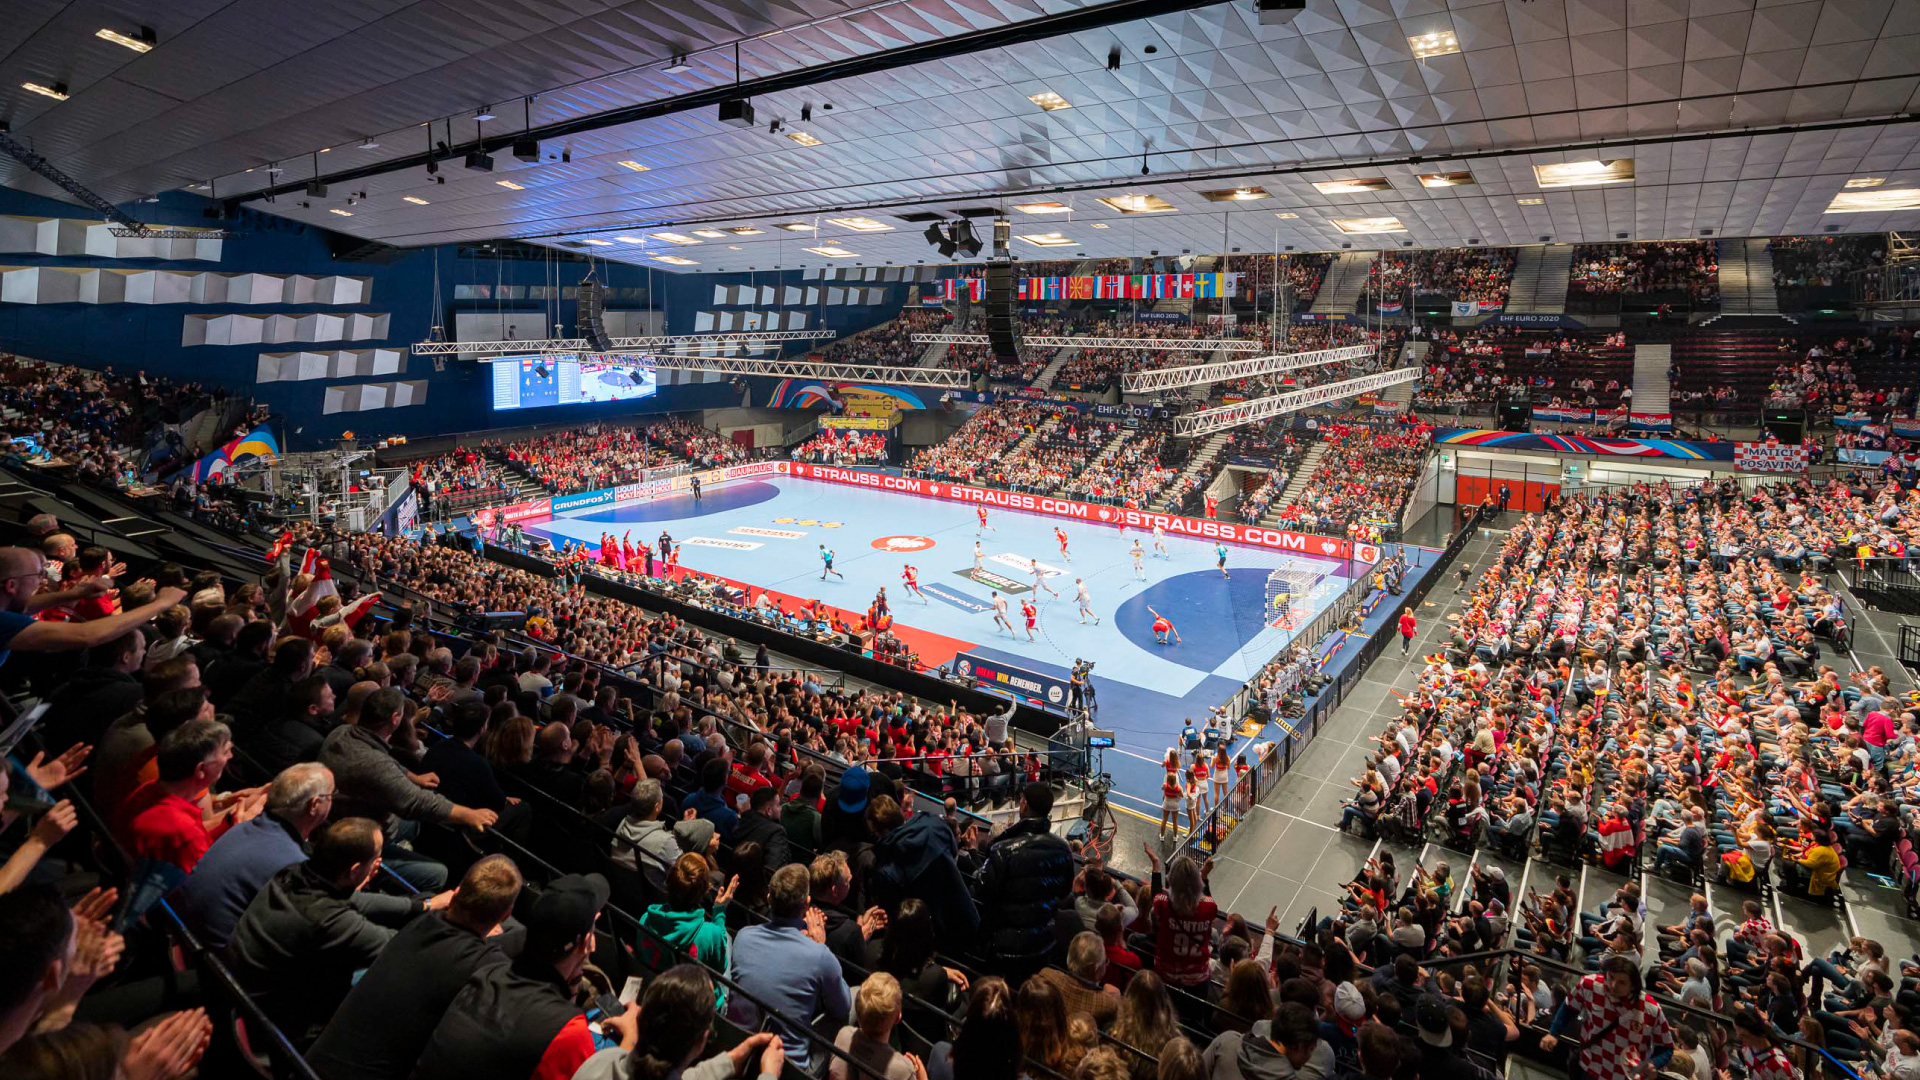 Campeonato Europeo de Balonmano Viena 2020 - PRG proporcionó iluminación, sonido y vídeo para este evento.